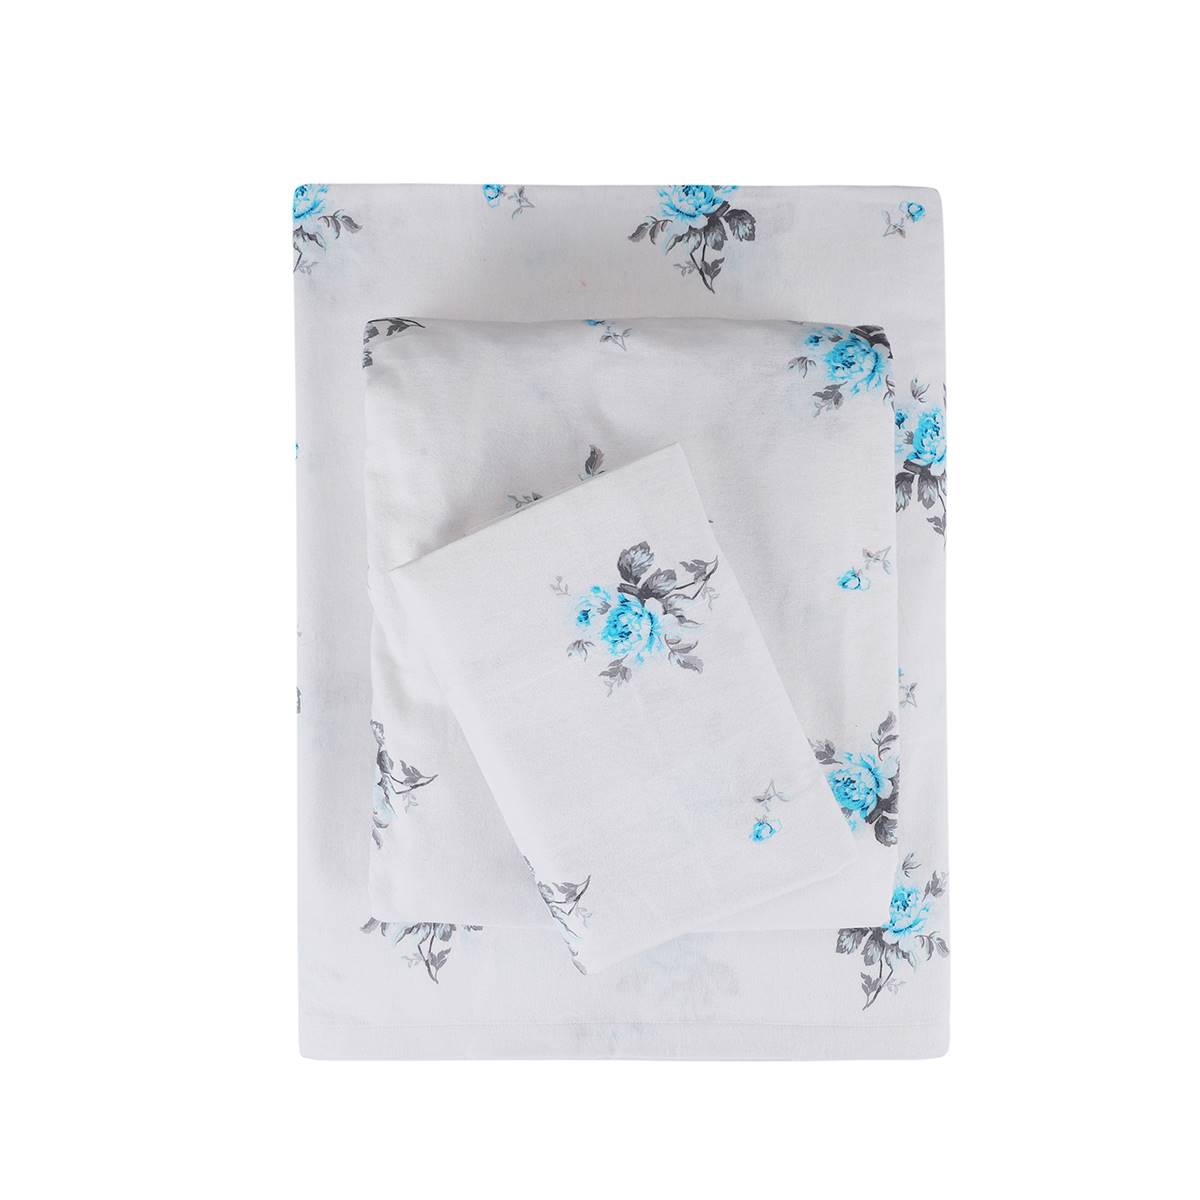 EnvioHome Durable Cotton Winter Flannel Blue Floral Sheet Set